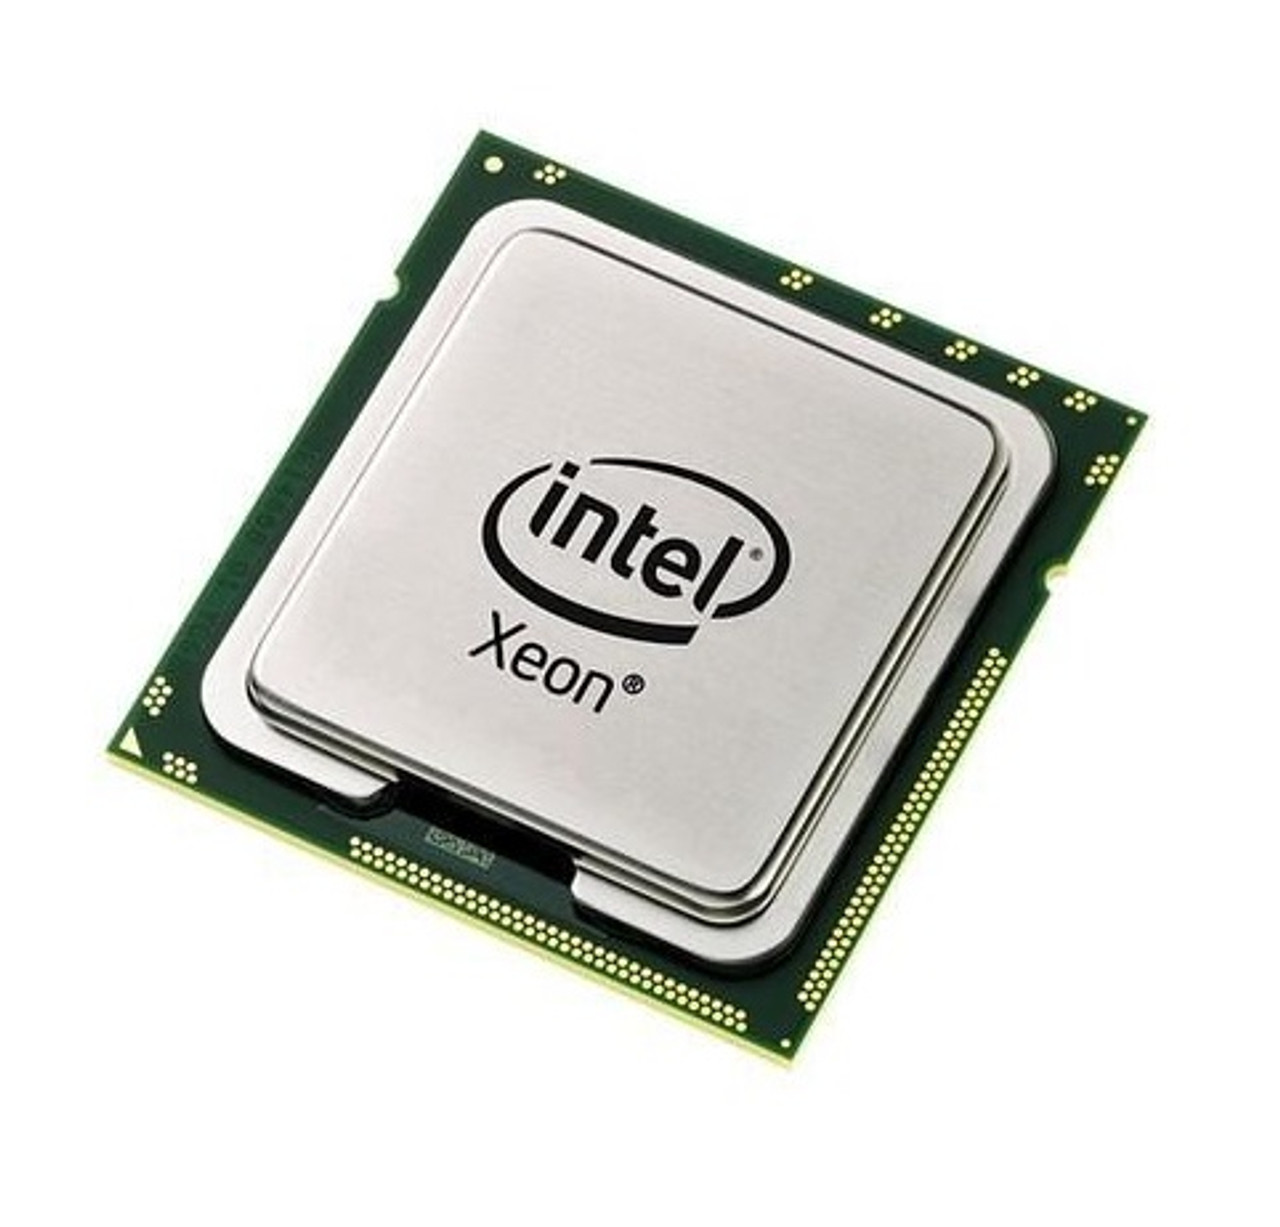 AT80573JH0366M - Intel Xeon L5215 Dual Core 1.86GHz 1066MHz FSB 6MB L2 Cache Socket LGA771 Processor